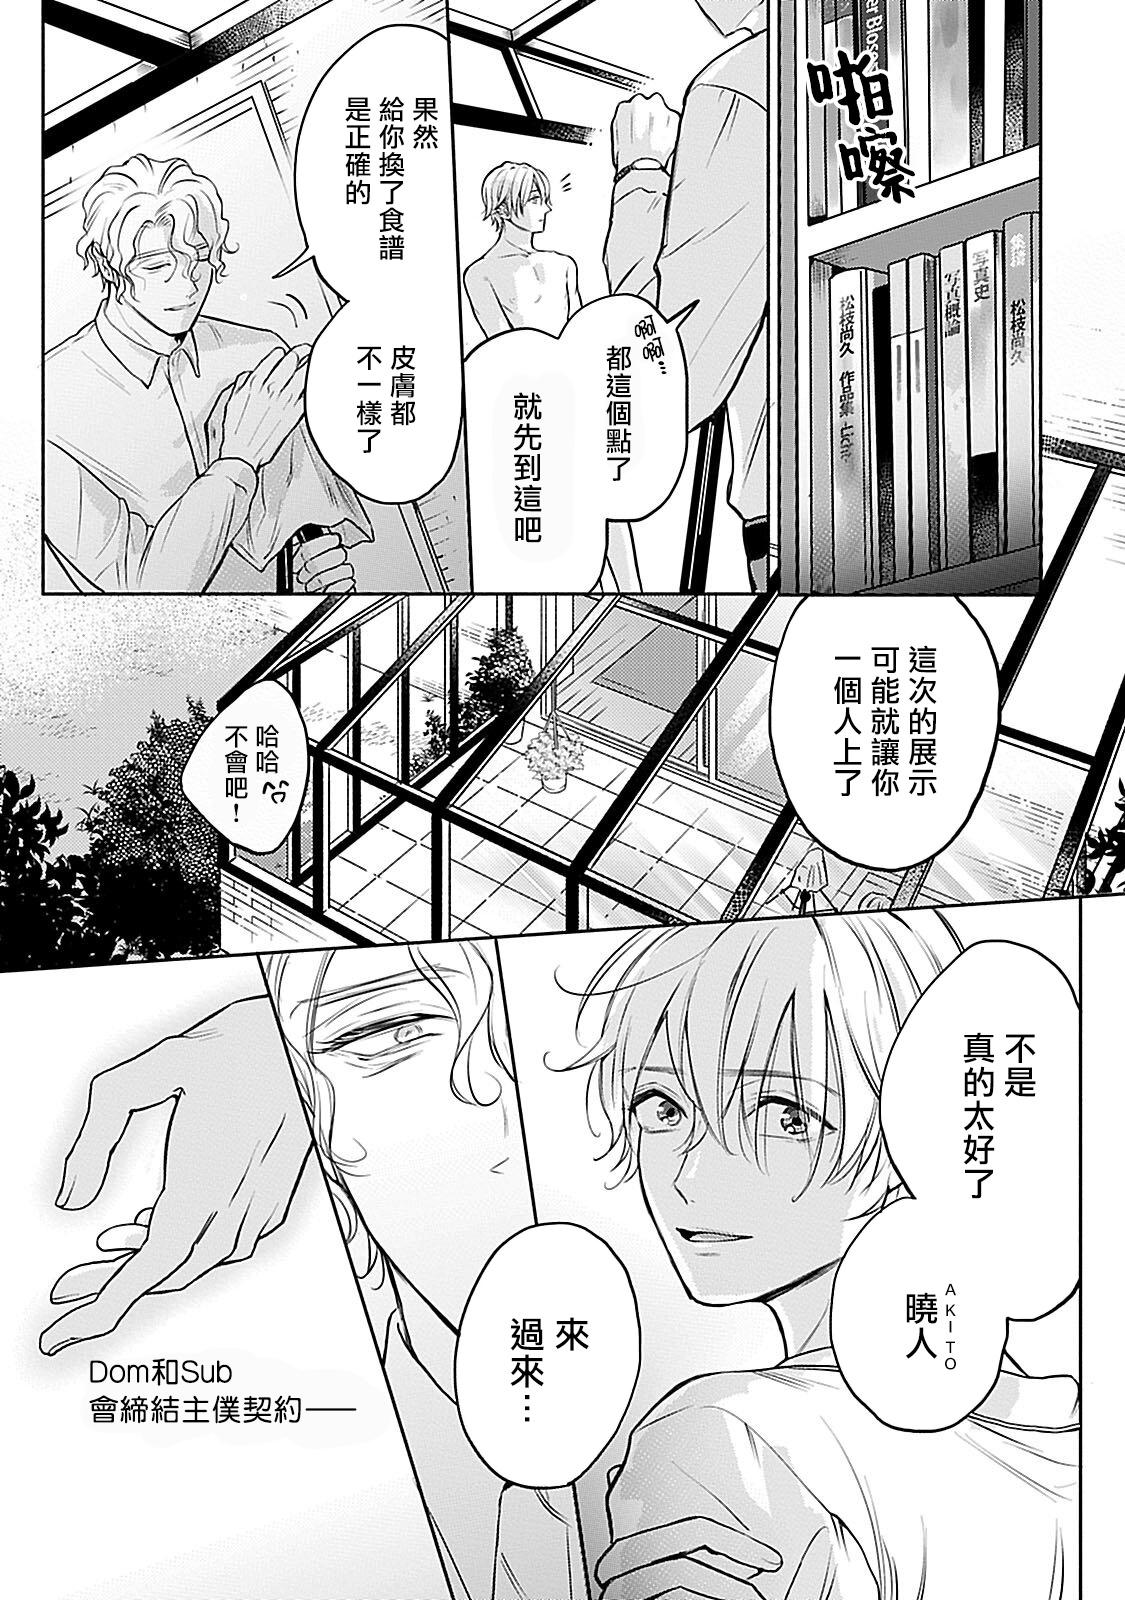 4some Shujuu no Saga | 主仆之性 Ch. 1 Tites - Page 7